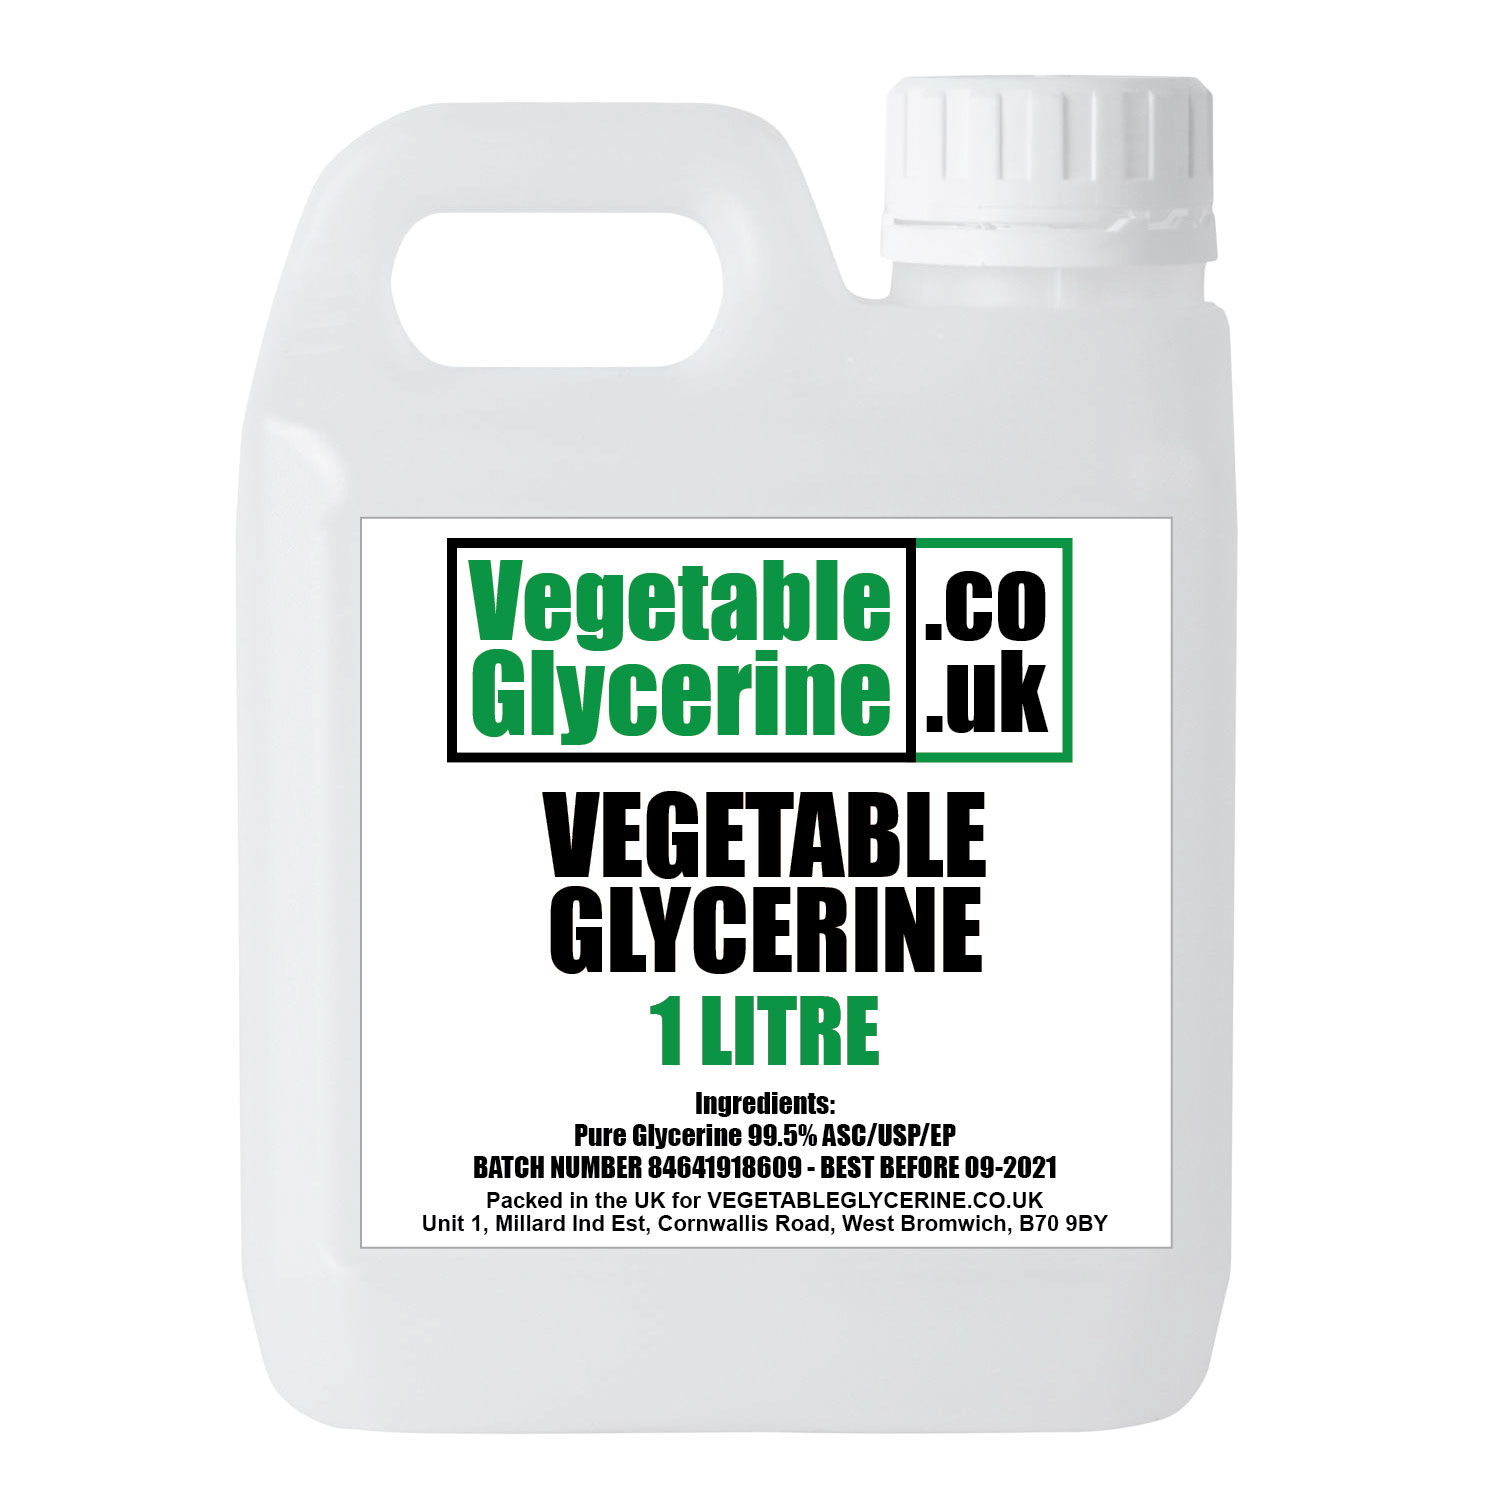 https://www.vegetableglycerine.co.uk/wp-content/uploads/2020/04/vegetable-glycerin-1-litre-jerry-can.jpg